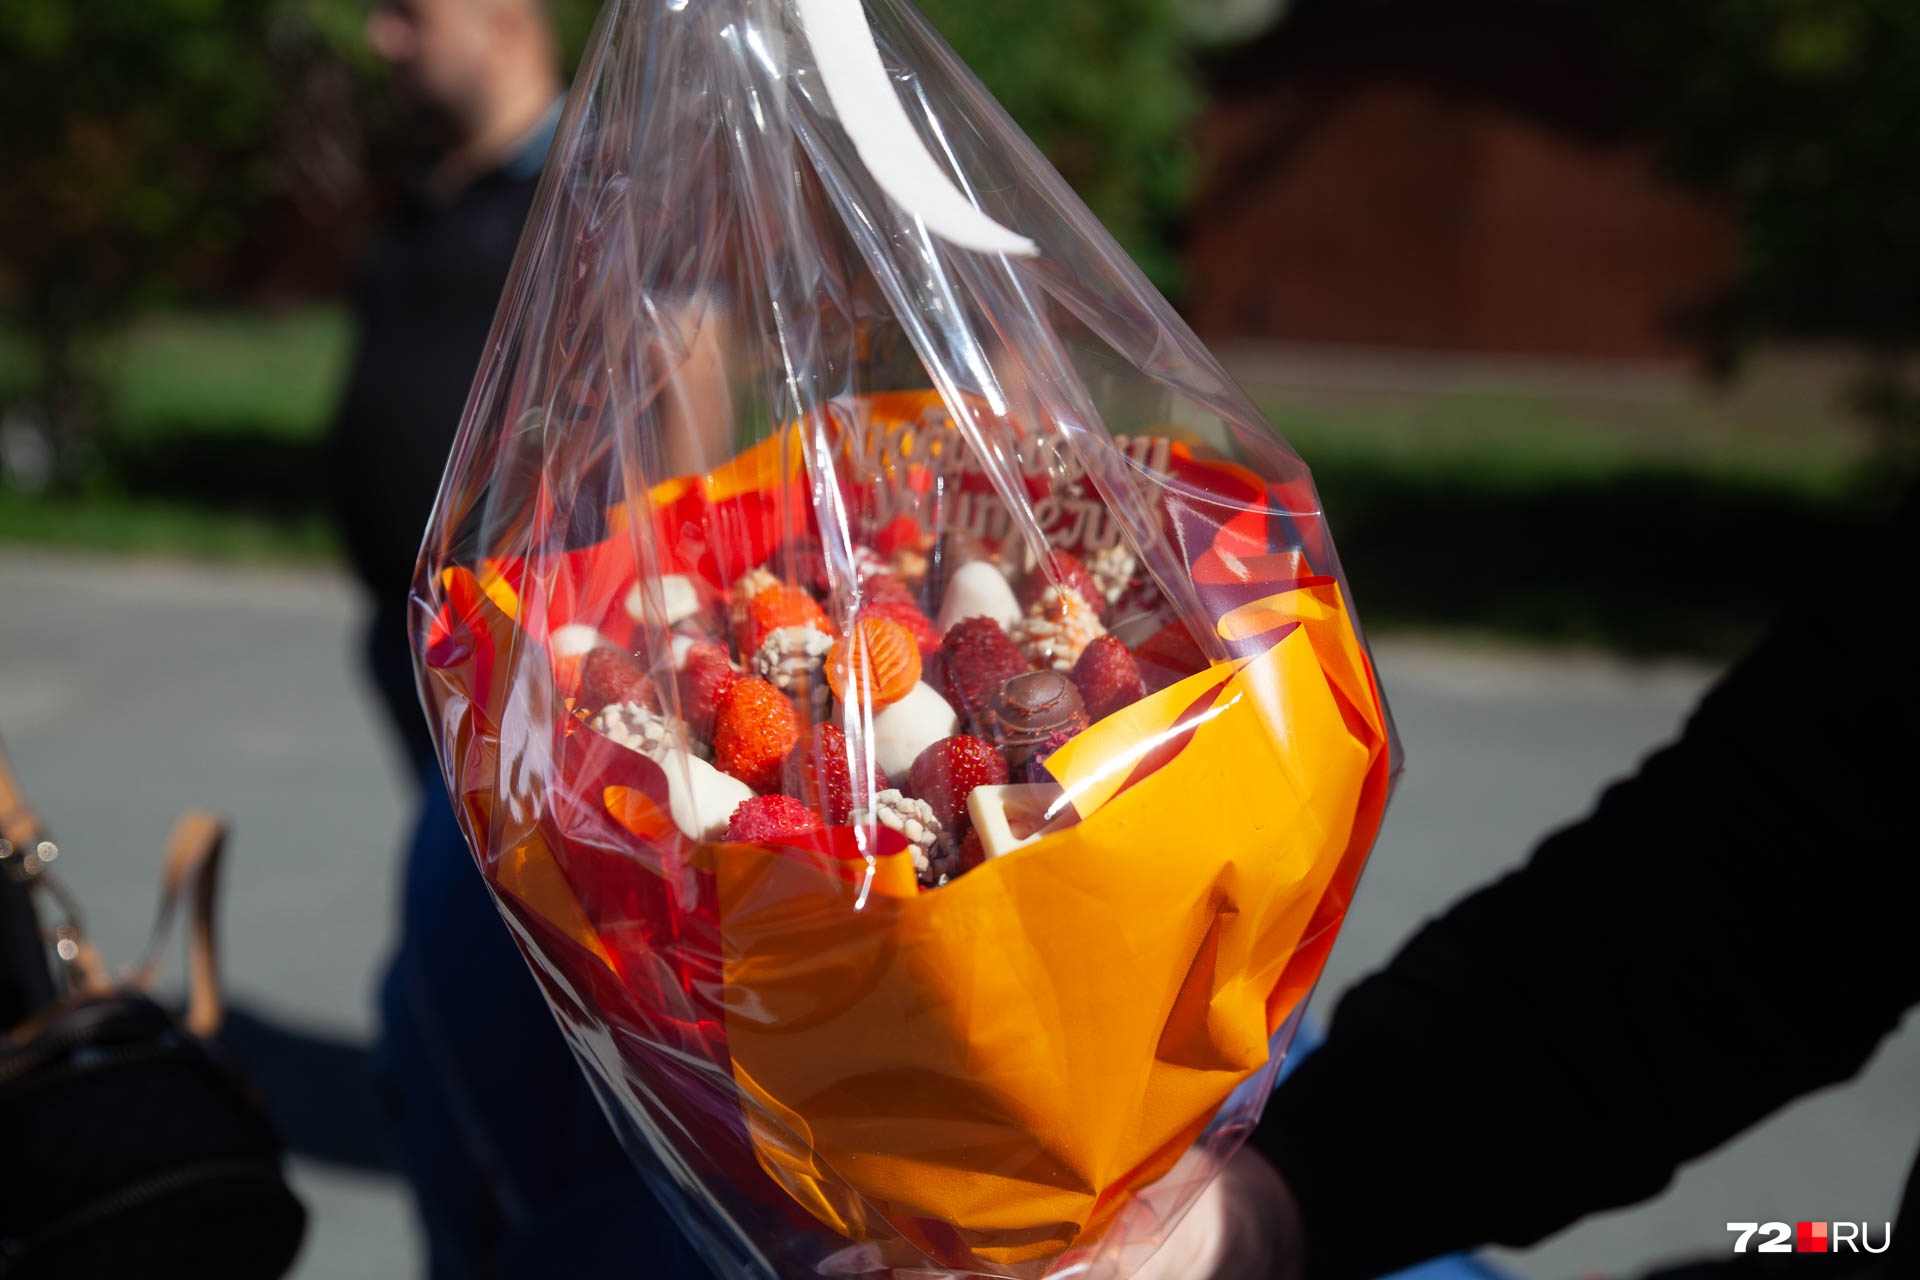 Сладкий букет из клубники подарили учителю в школе № 2. Мы насчитали больше 20 ягод. И выглядит ничуть не хуже цветов, и объестся им можно запросто